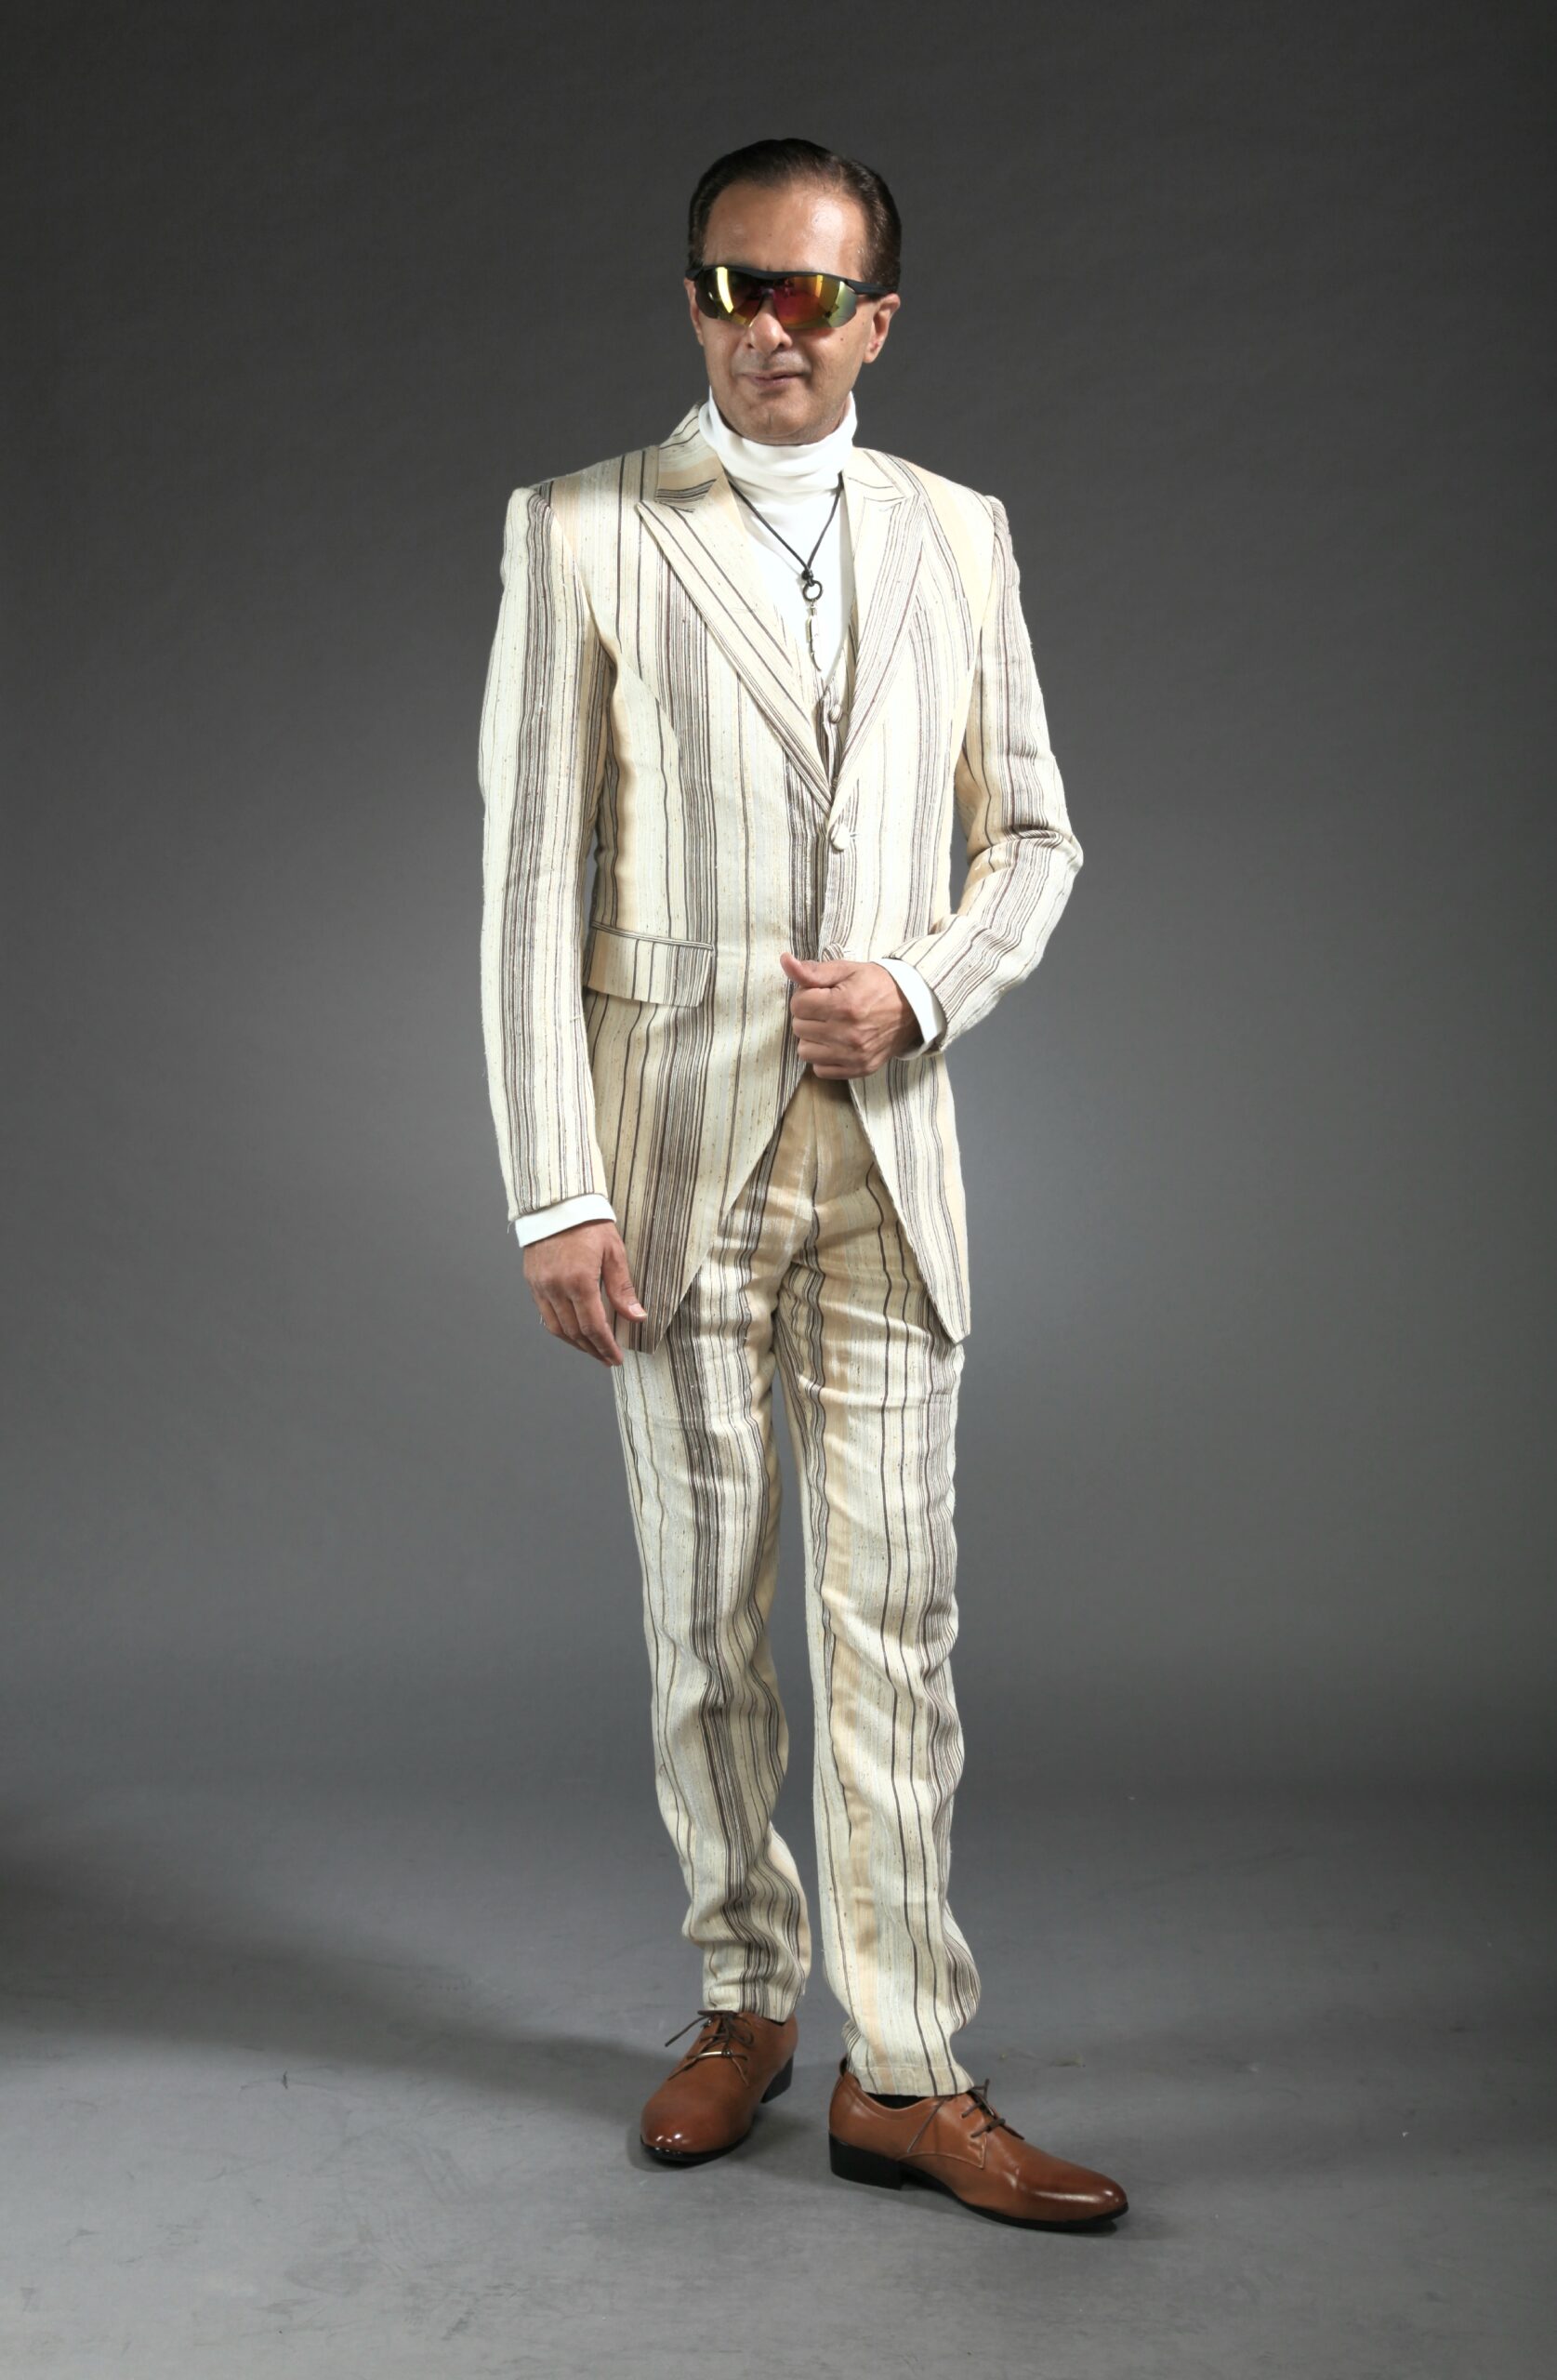 Mst 5006 01 Rent Rental Hire Tuxedo Suit Black Tie Suit Designer Suits Shop Tailor